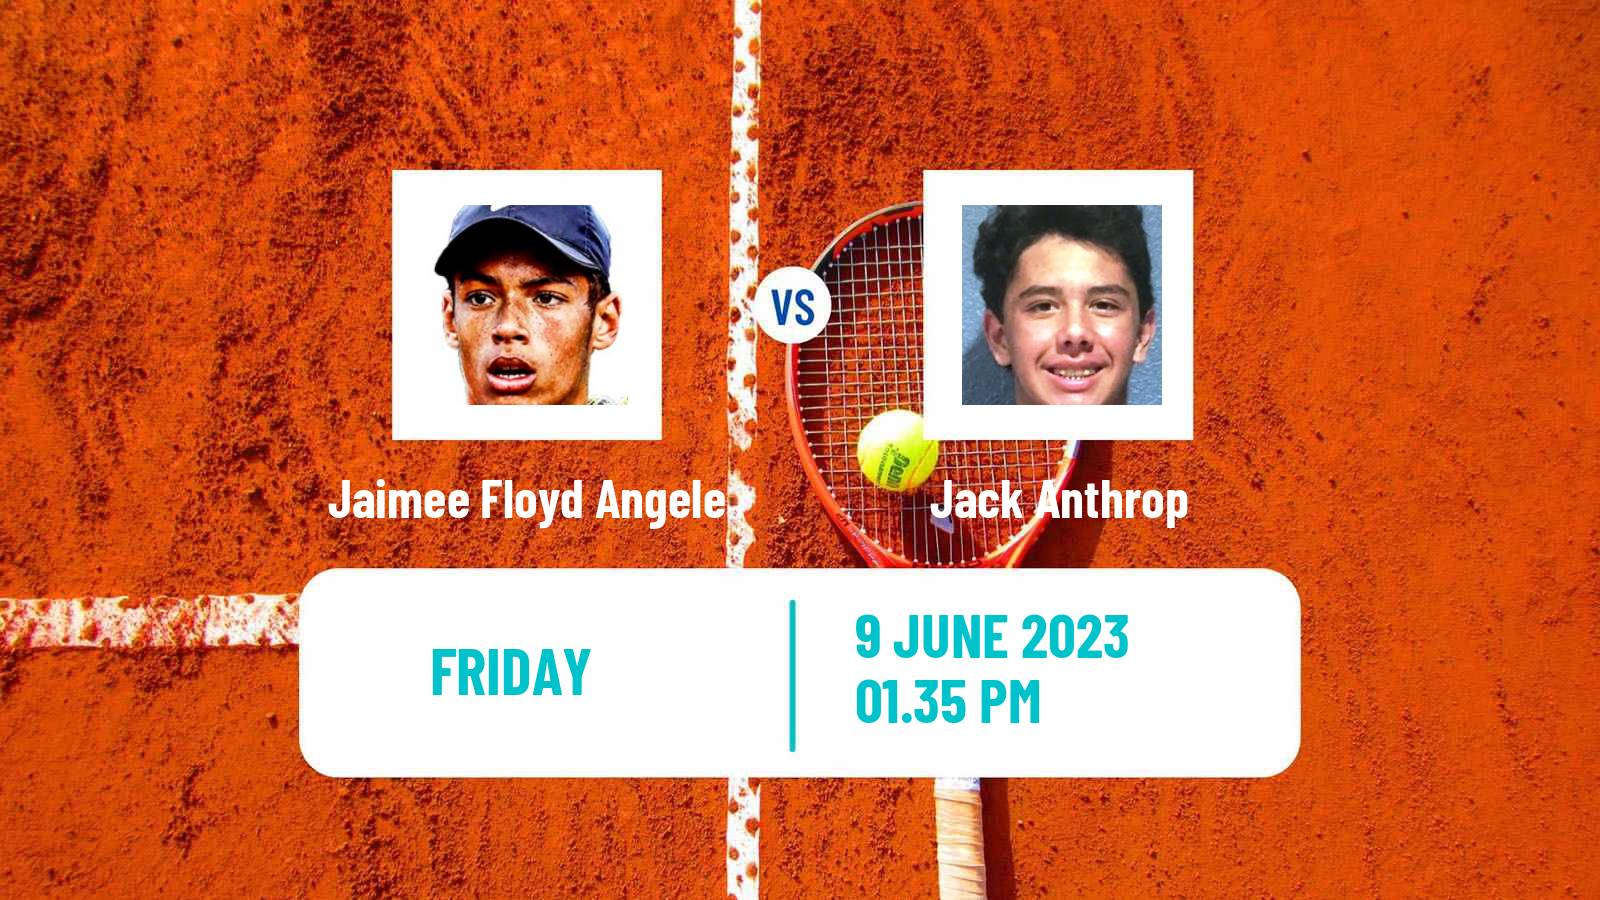 Tennis ITF M15 San Diego Men Jaimee Floyd Angele - Jack Anthrop